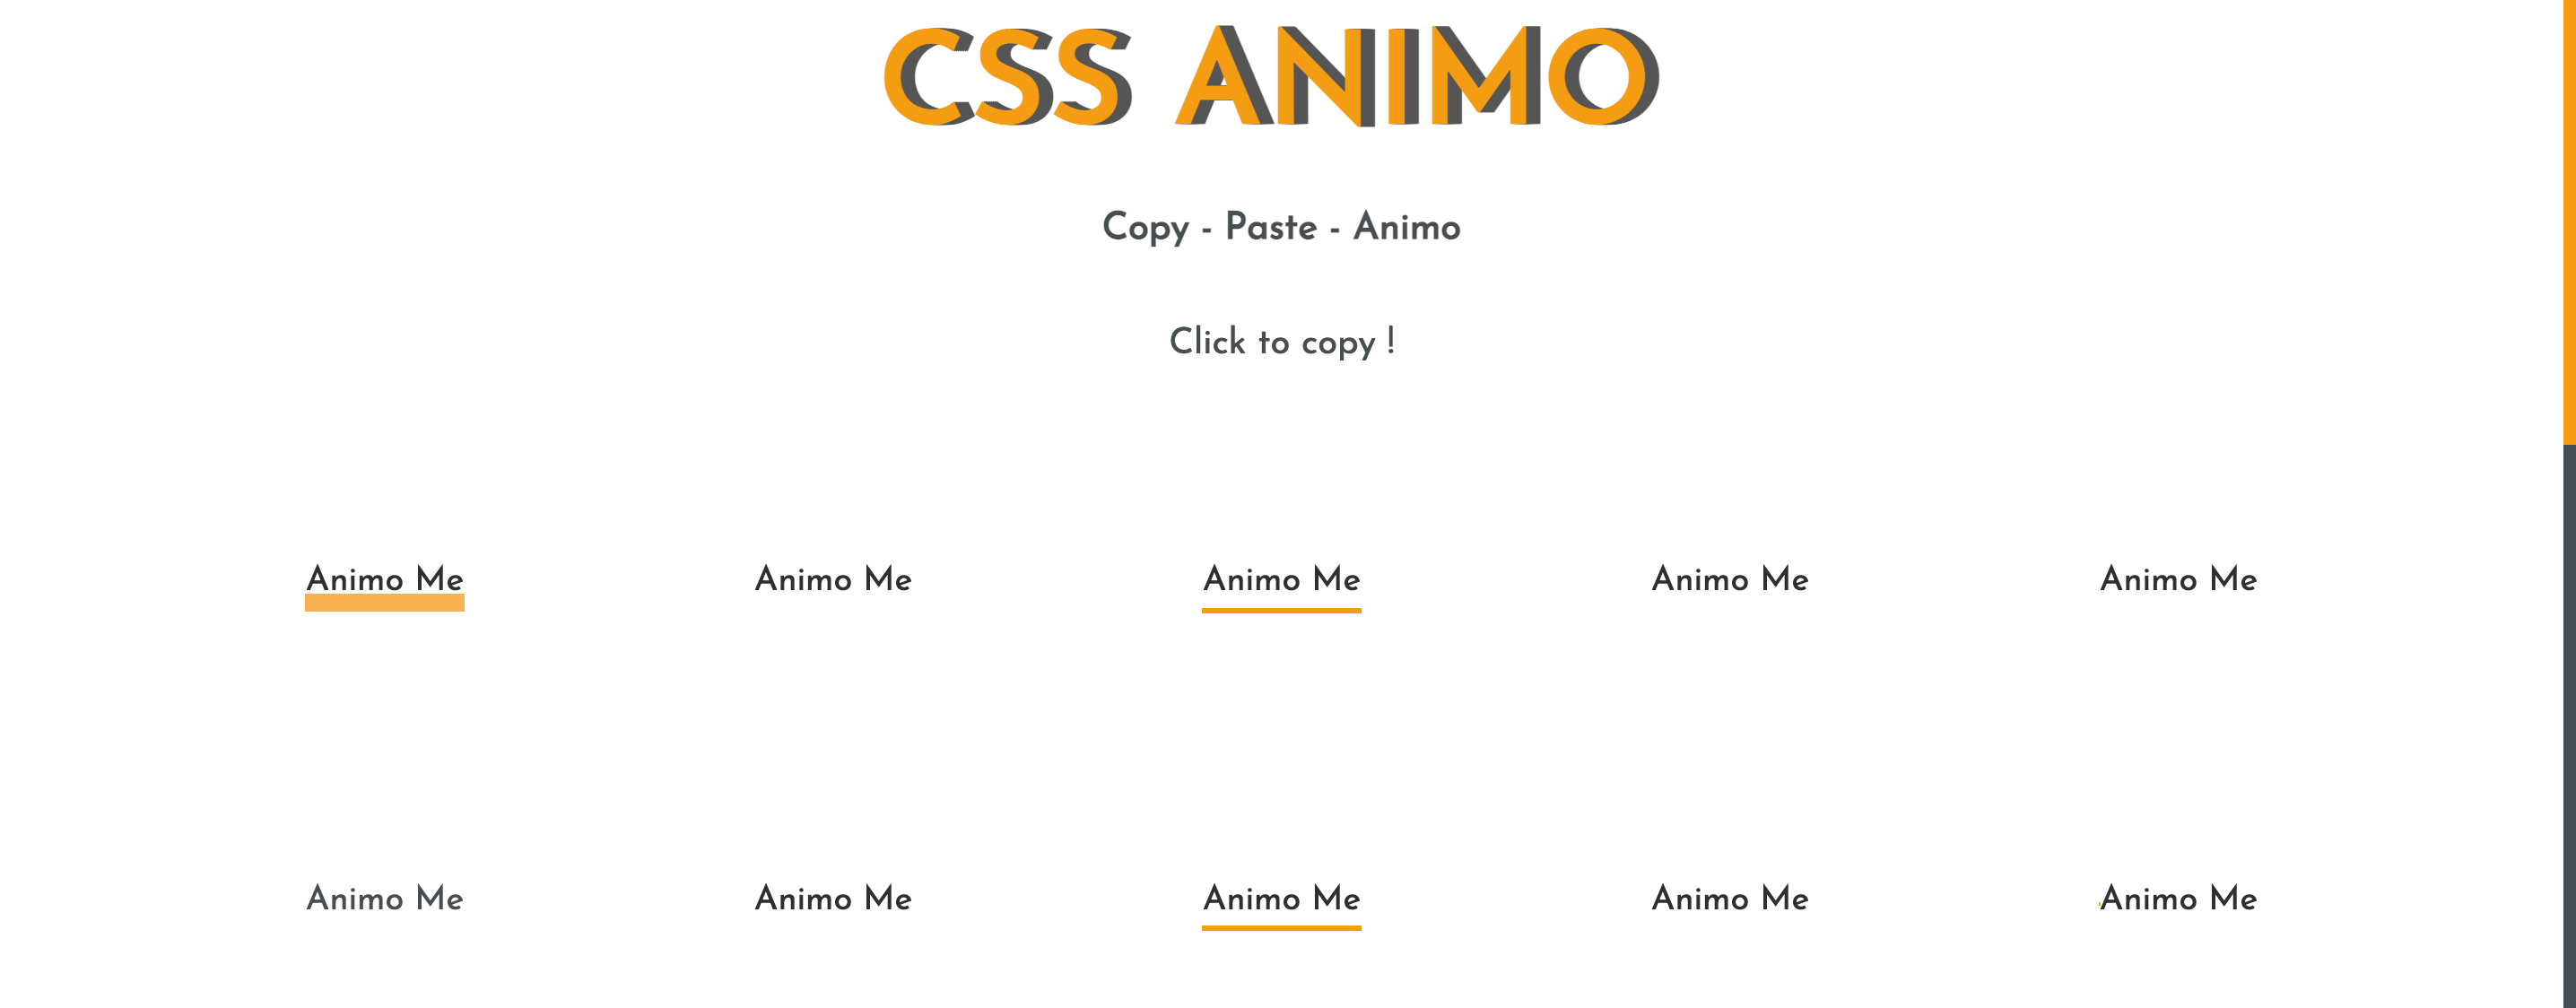 CSS Animo